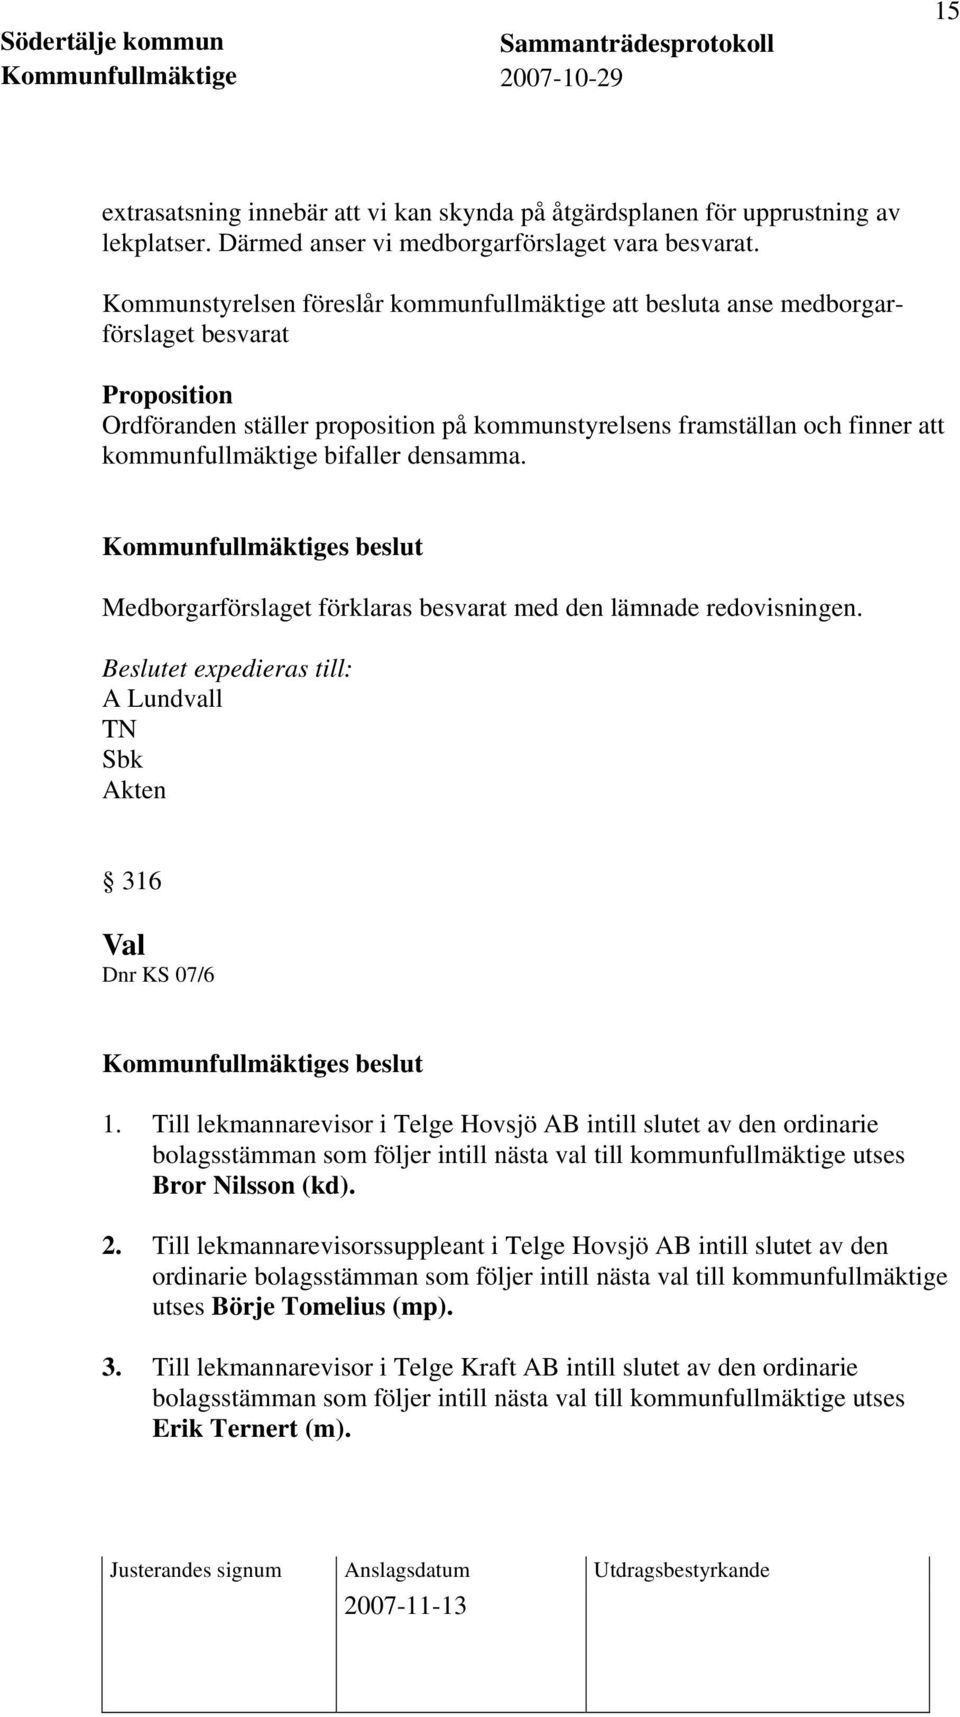 bifaller densamma. Medborgarförslaget förklaras besvarat med den lämnade redovisningen. A Lundvall TN Sbk 316 Val Dnr KS 07/6 1.